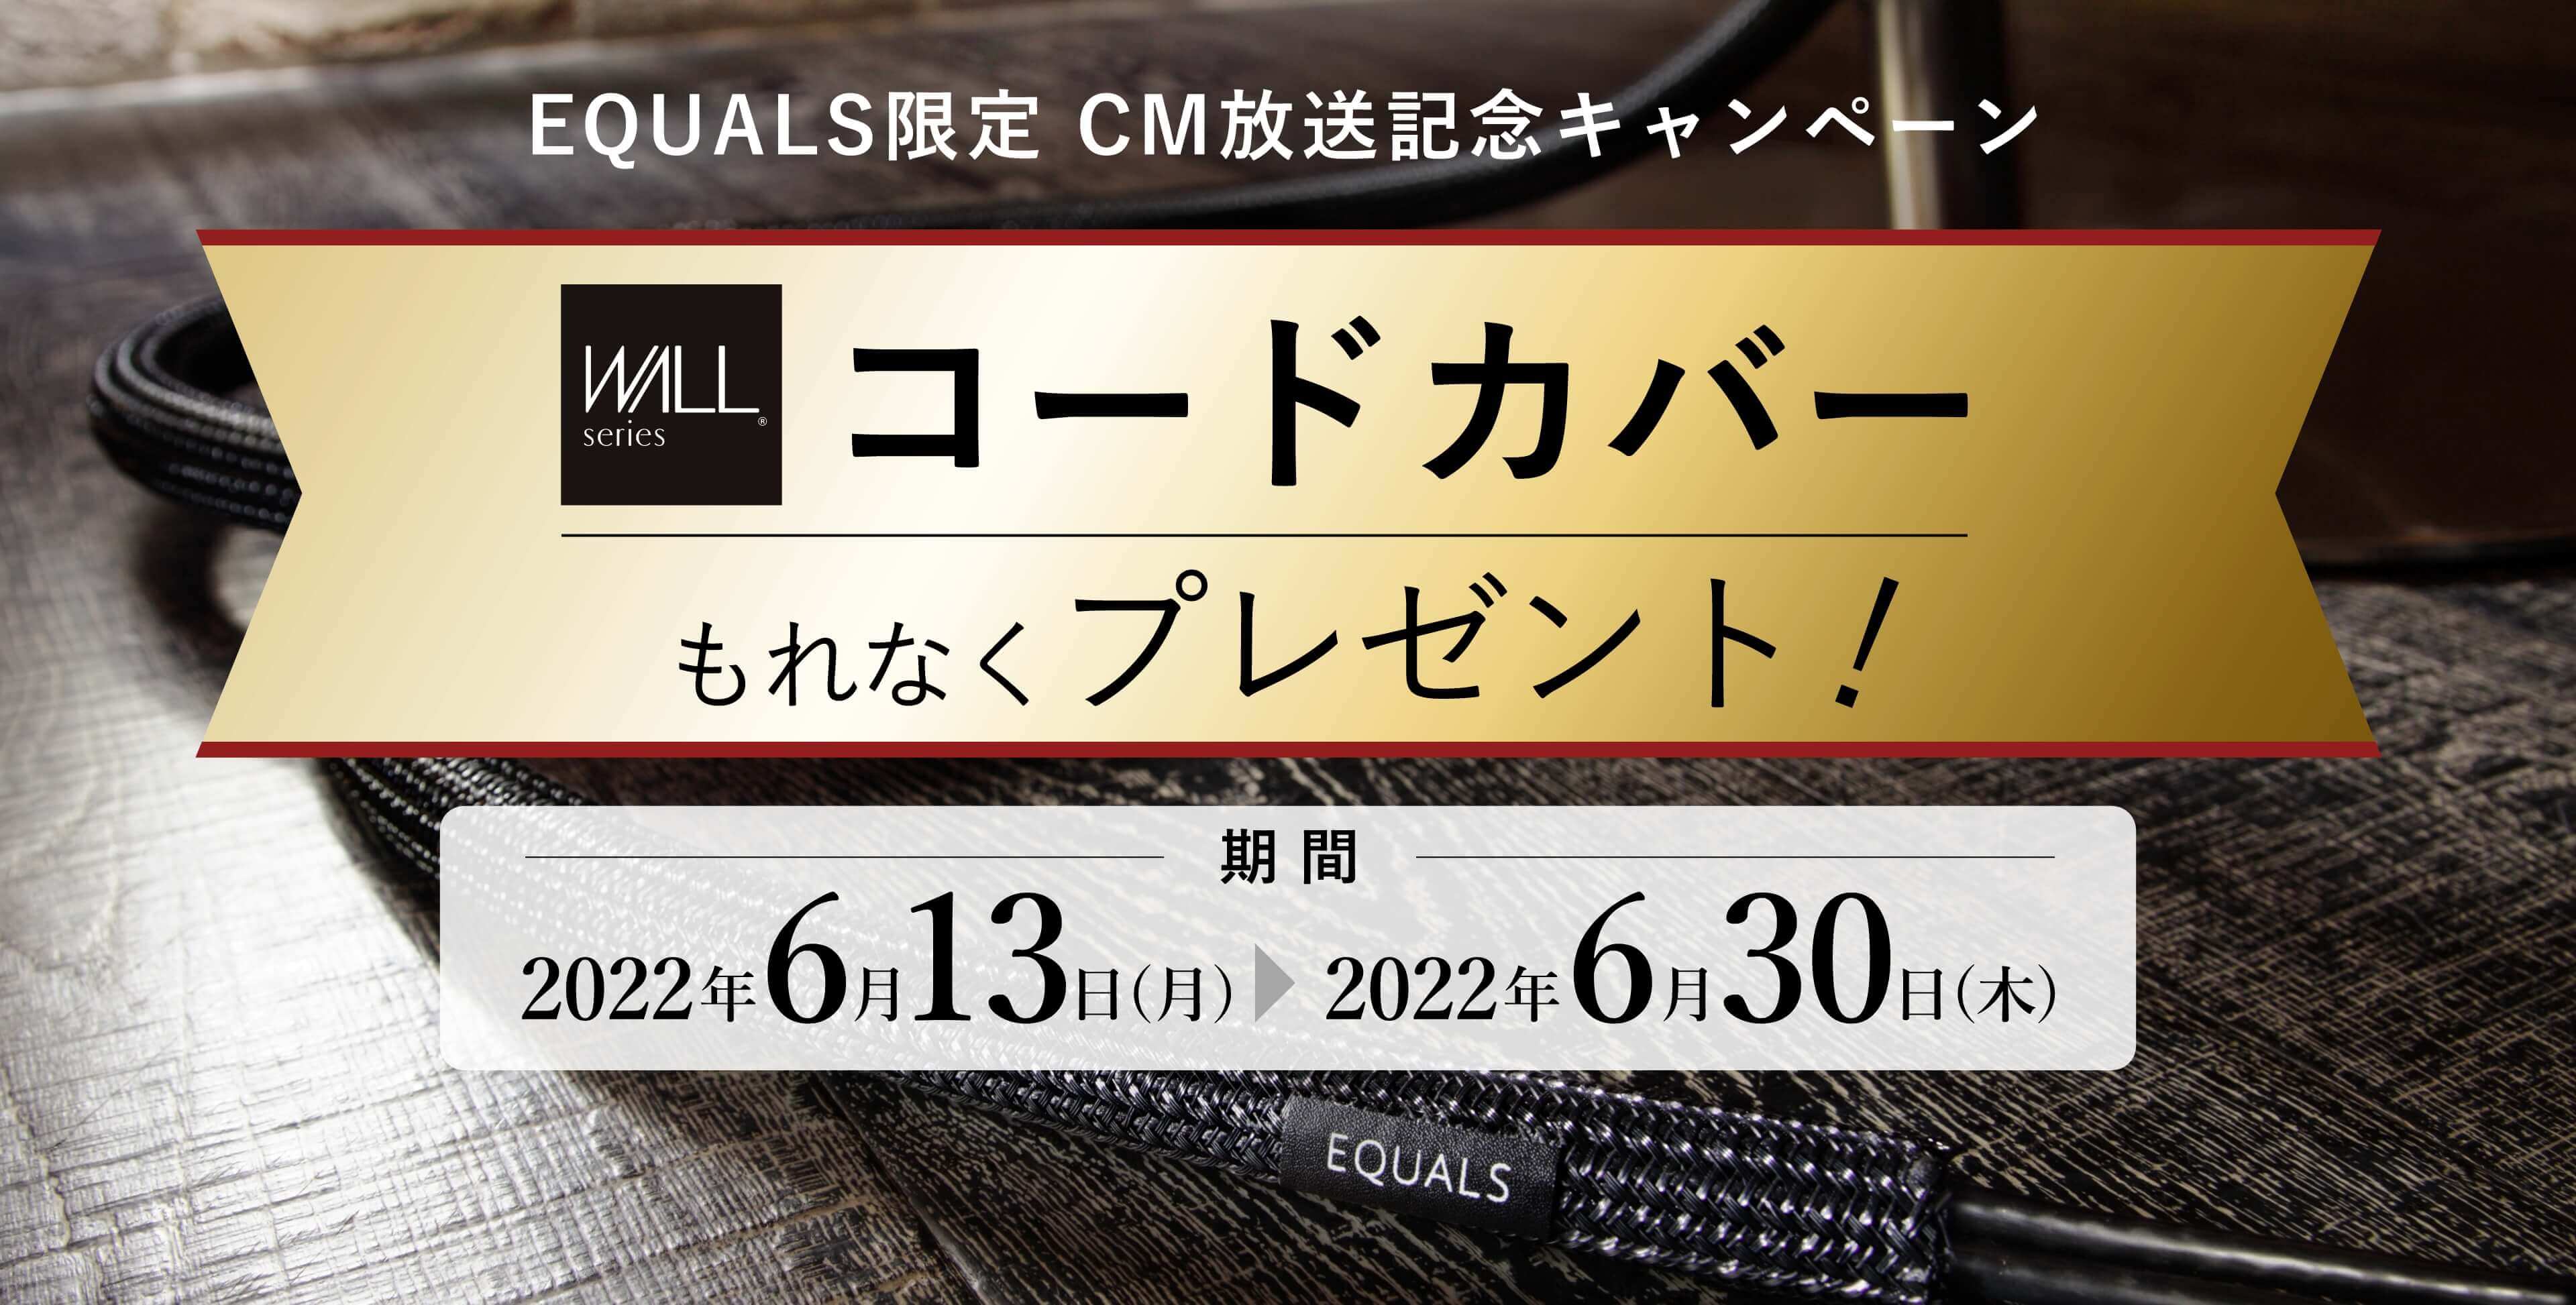 EQUALS限定 CM放送記念キャンペーンコードカバープレゼント